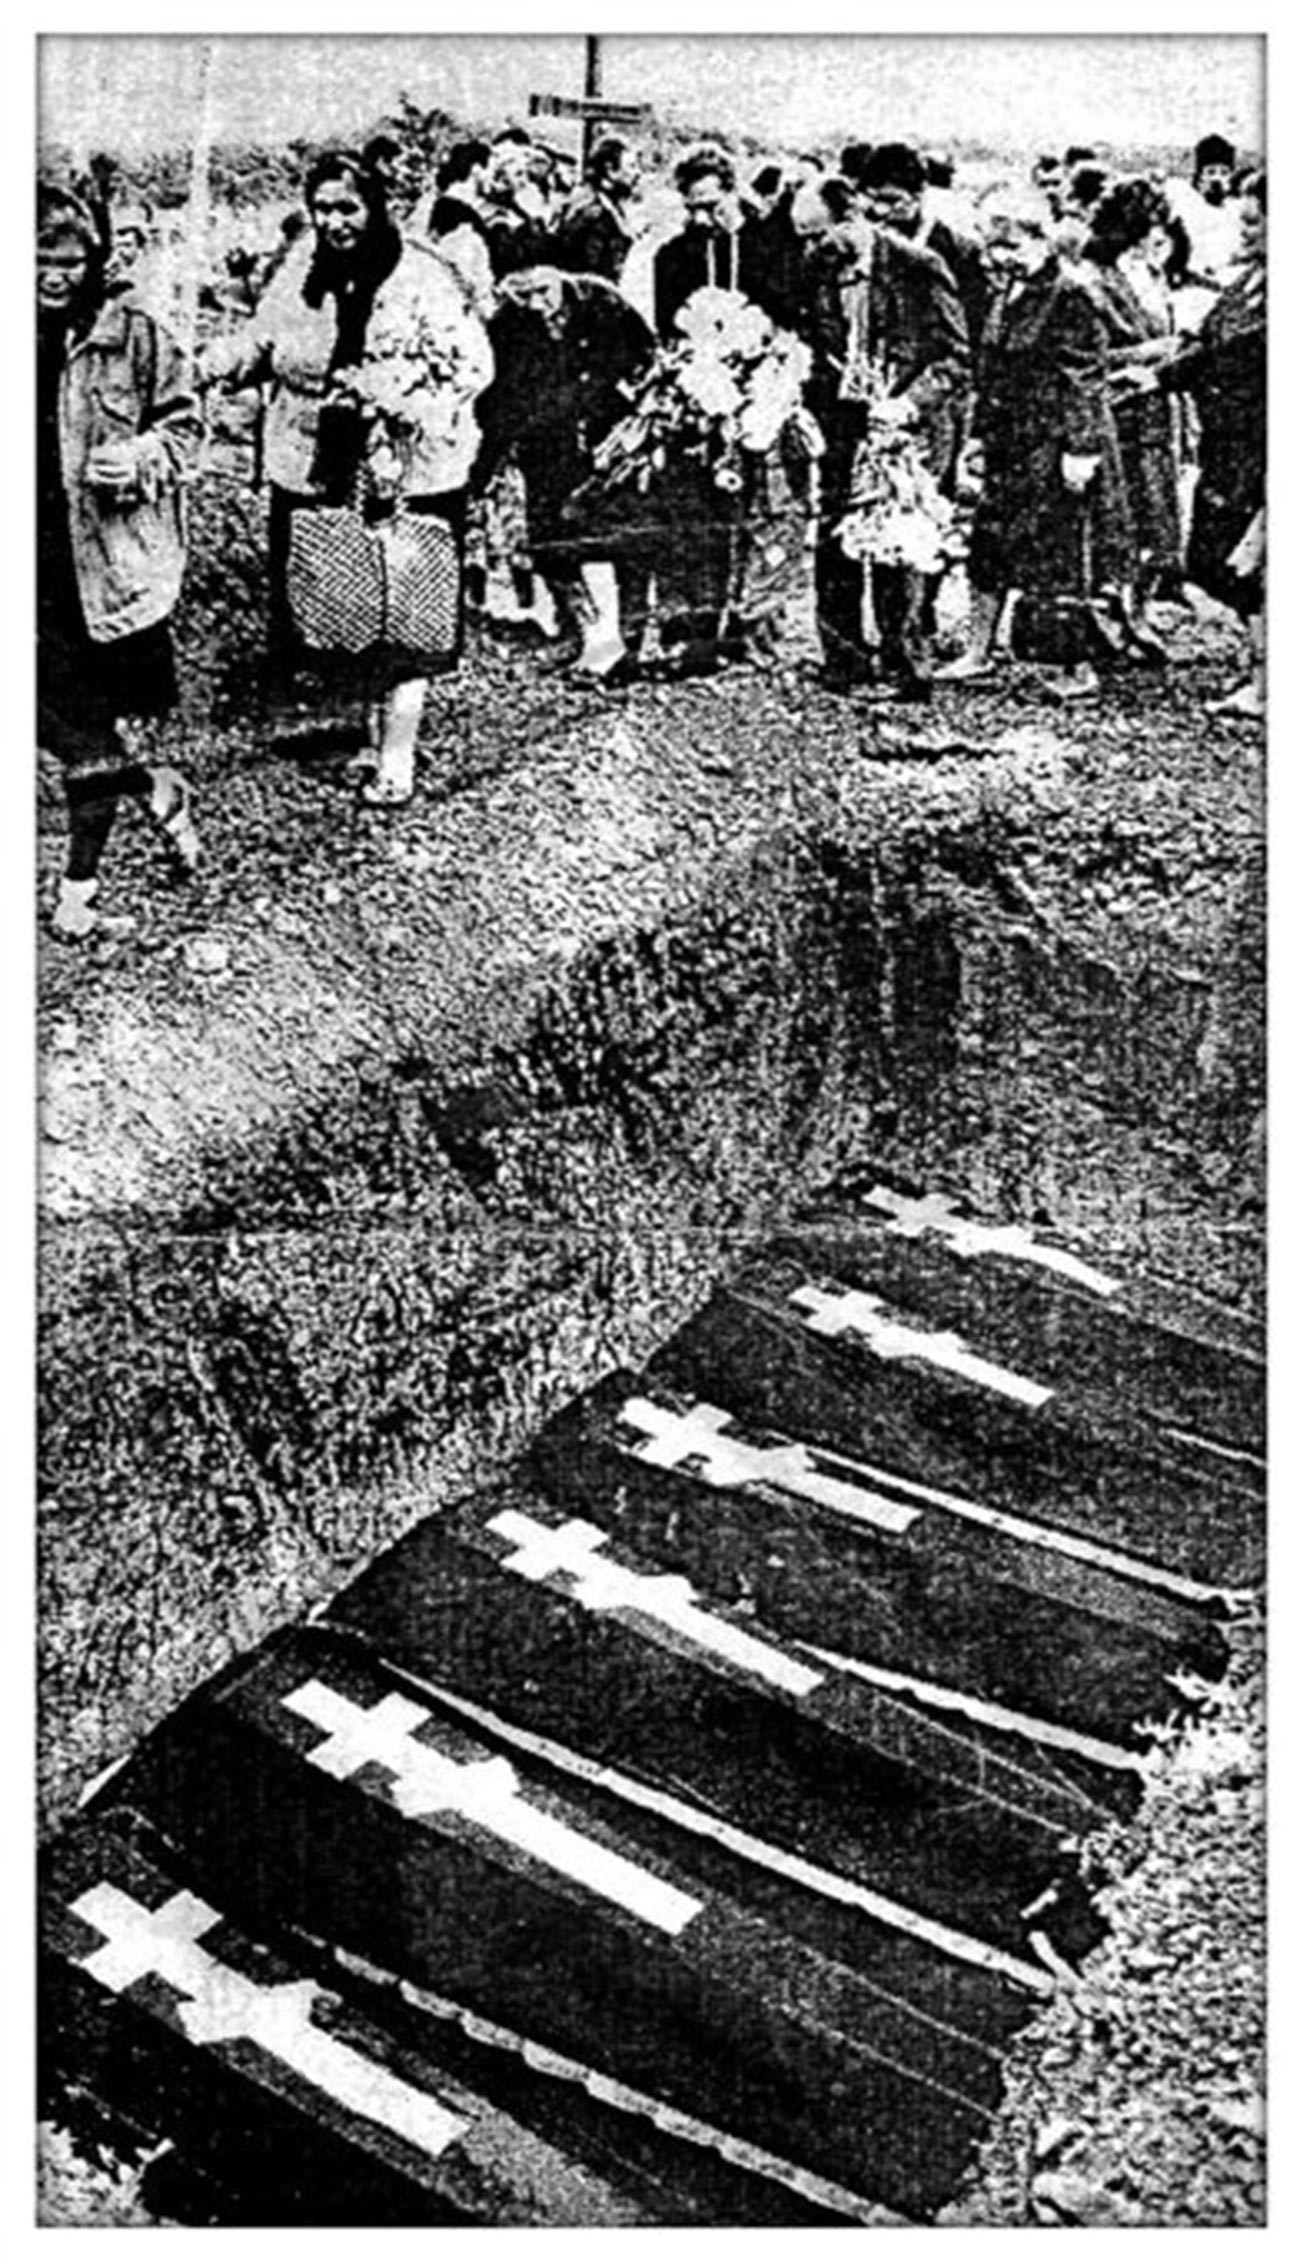 Simbolični ponovni pokol žrtev streljanja leta 1962 na pokopališču v Novočerkasku, 1994

